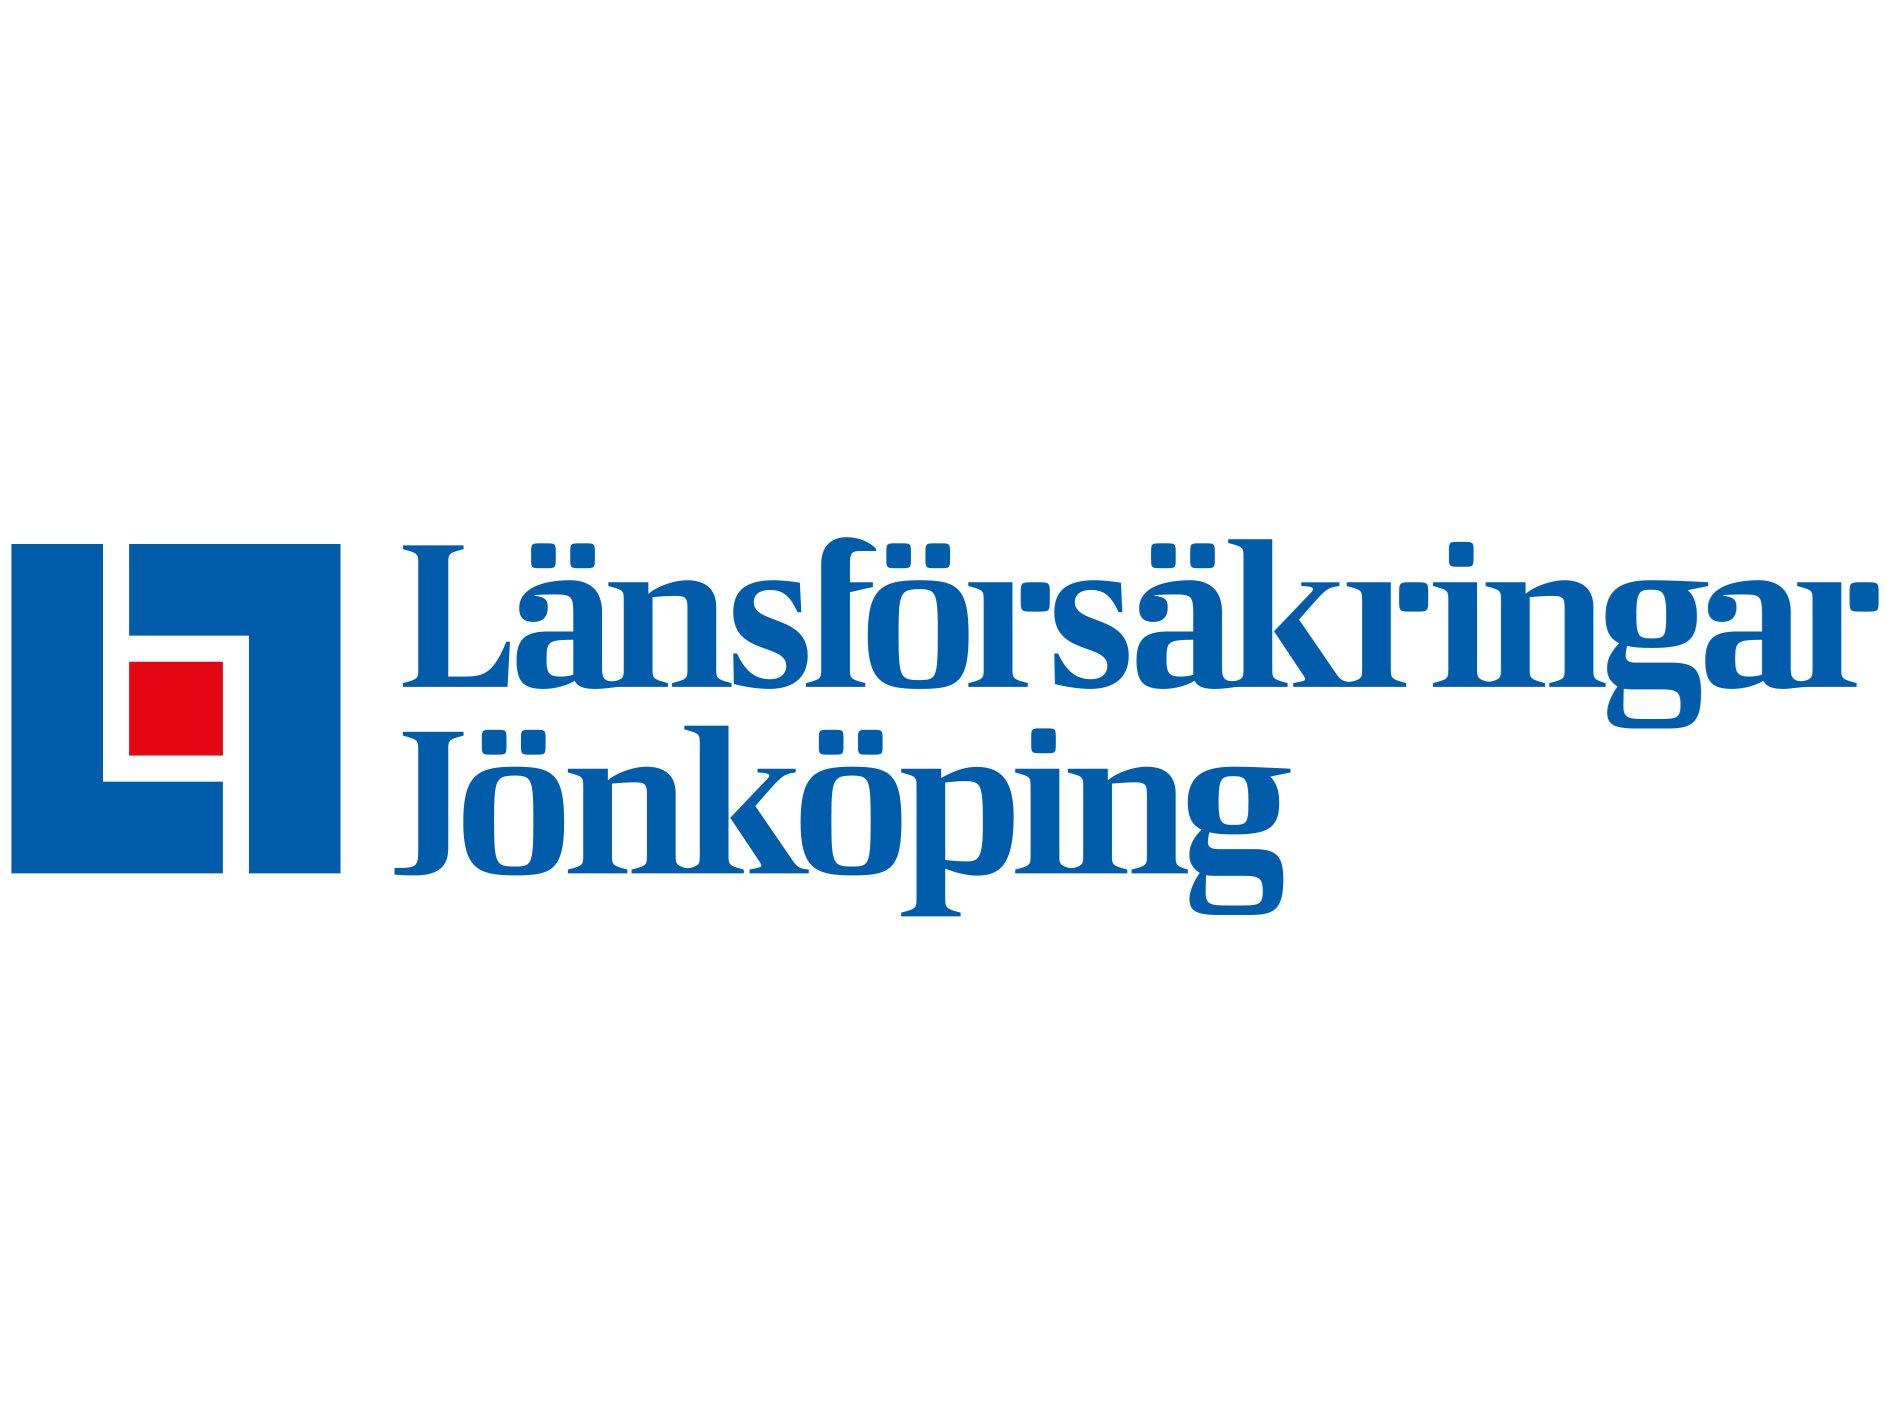 Länsförsäkringar Jönköping